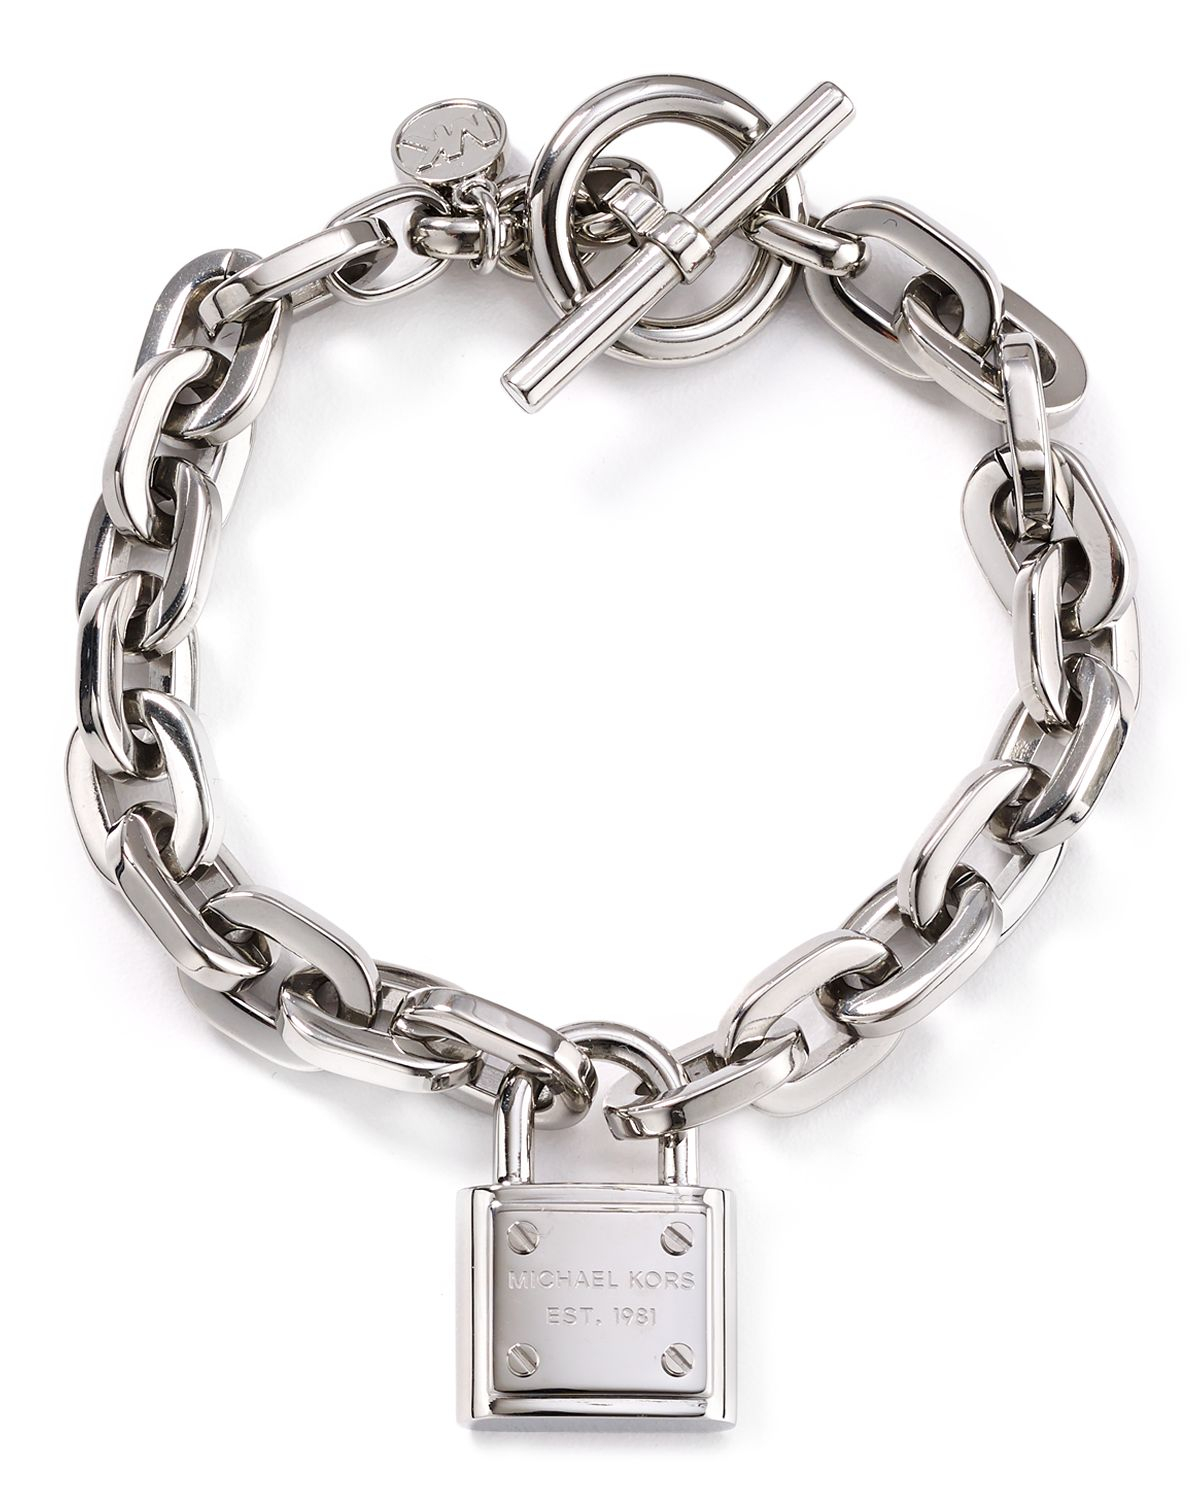 Michael Kors Designer Magnetic Chain Bracelet yourtailorin